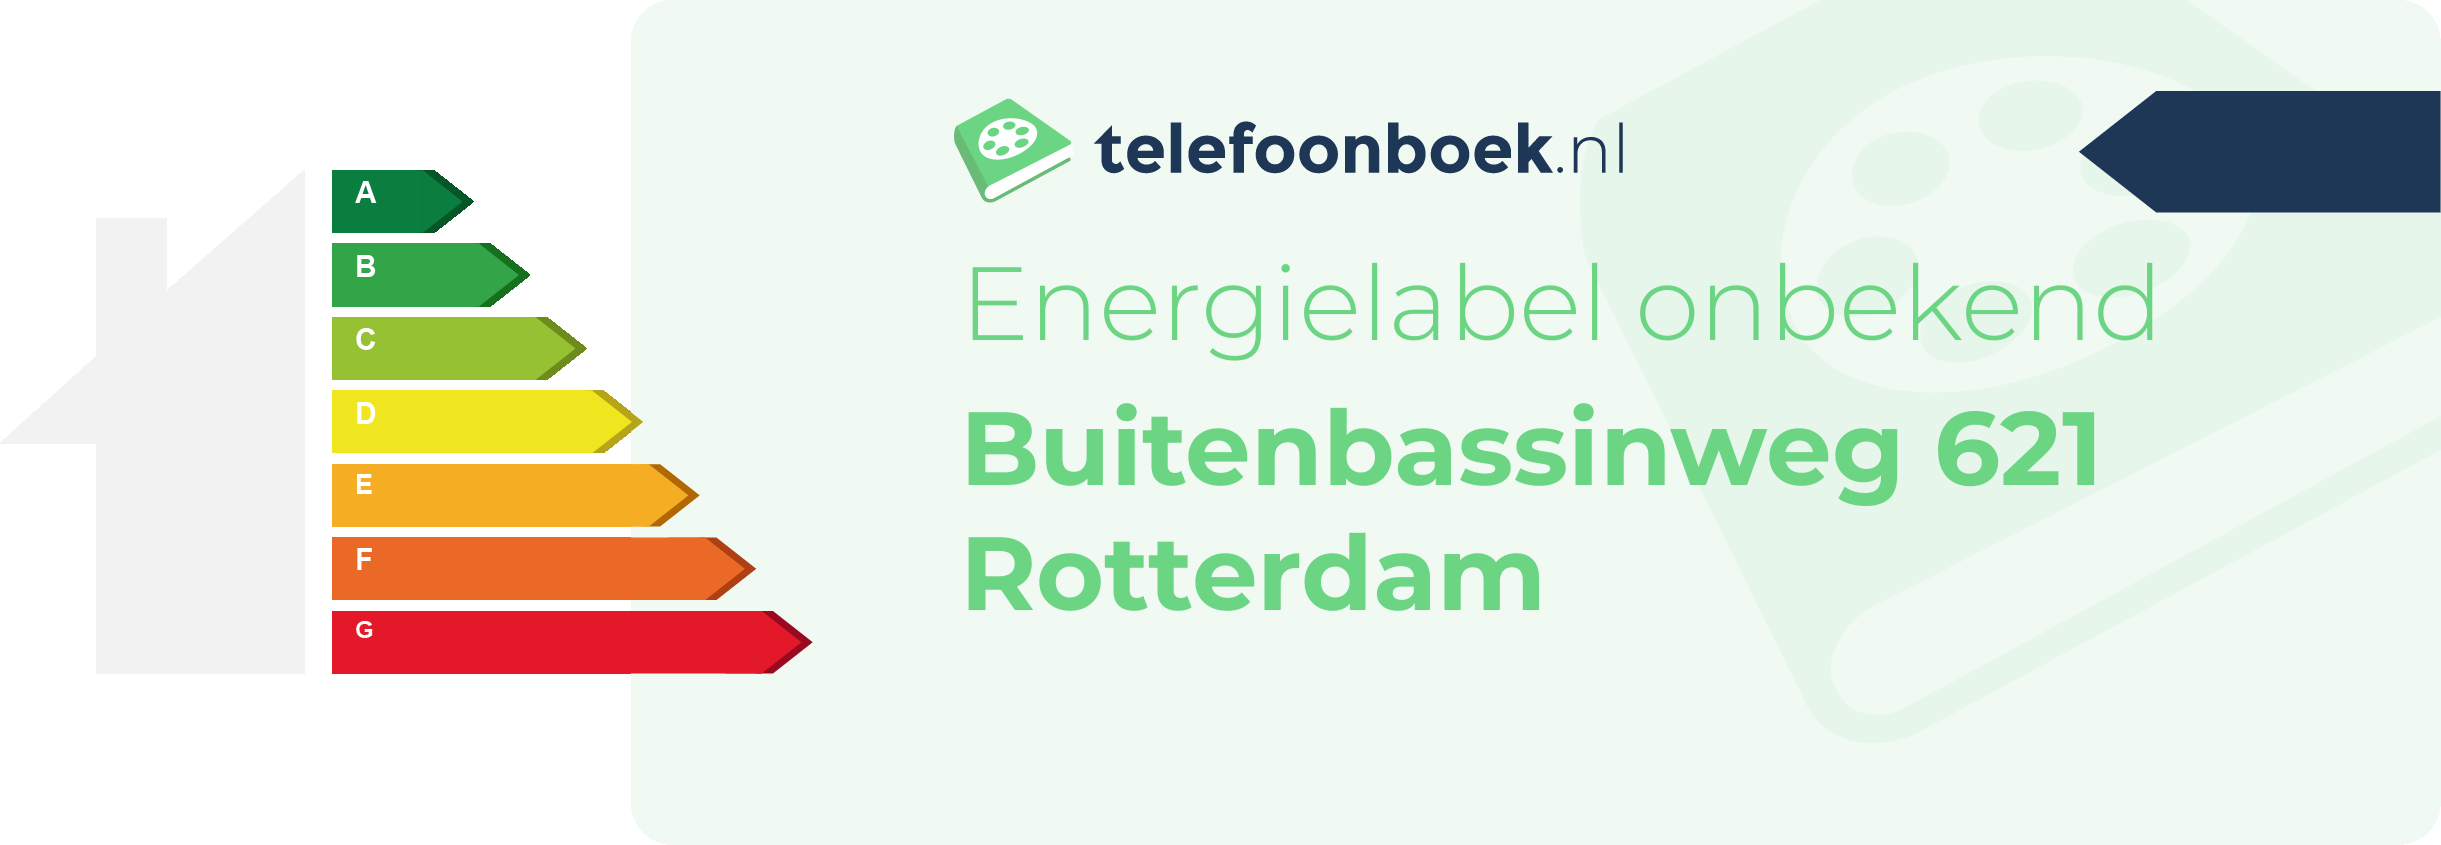 Energielabel Buitenbassinweg 621 Rotterdam